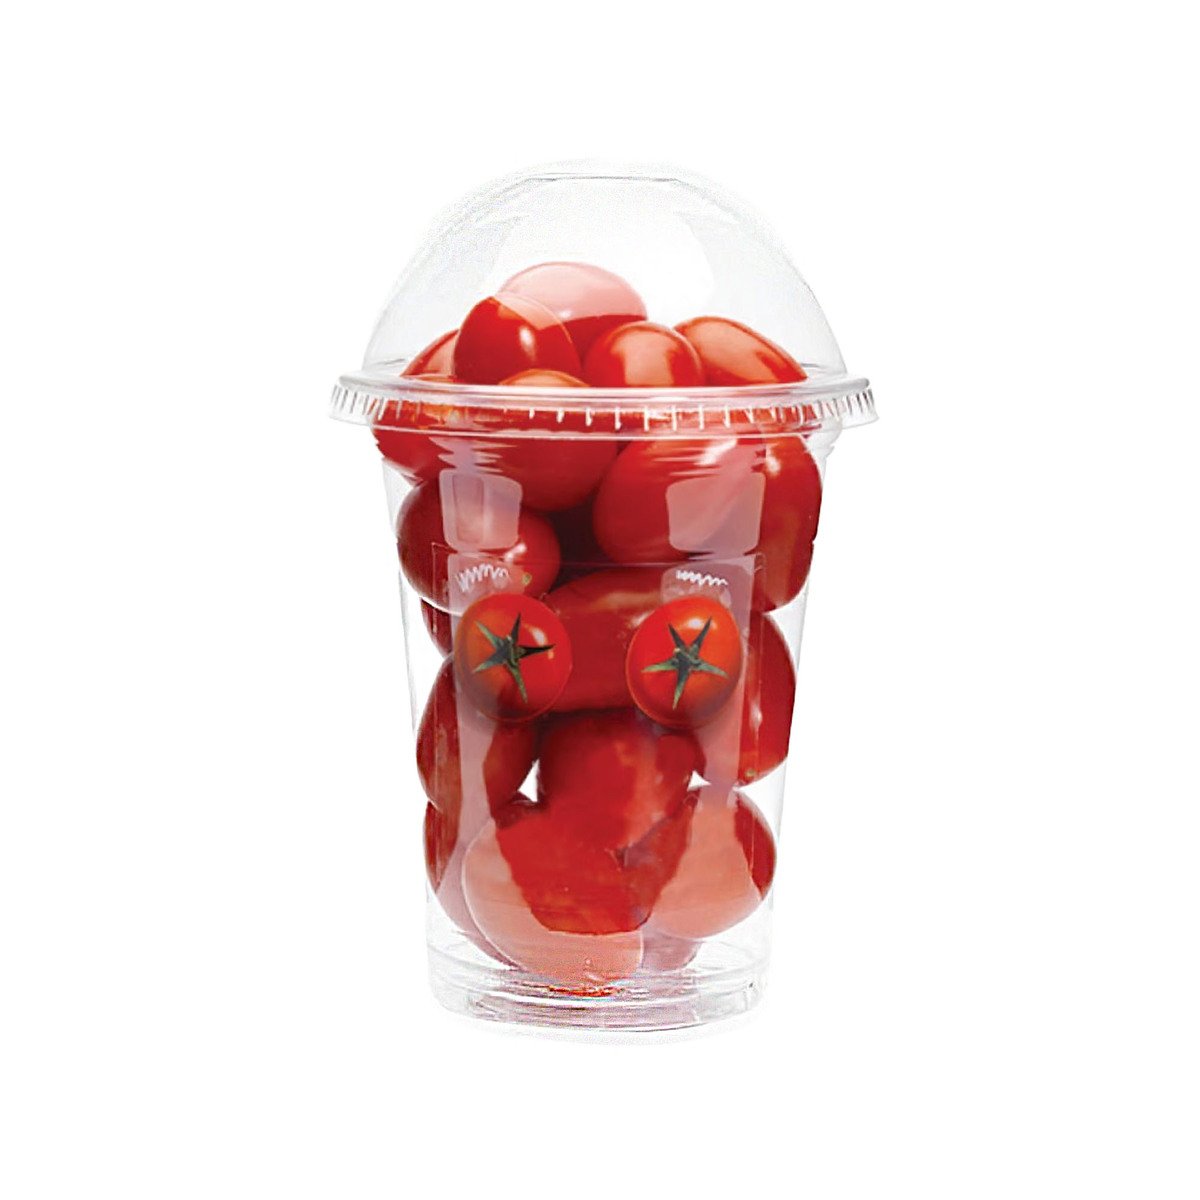 Hola Cherry Tomato Shaker 1 pkt